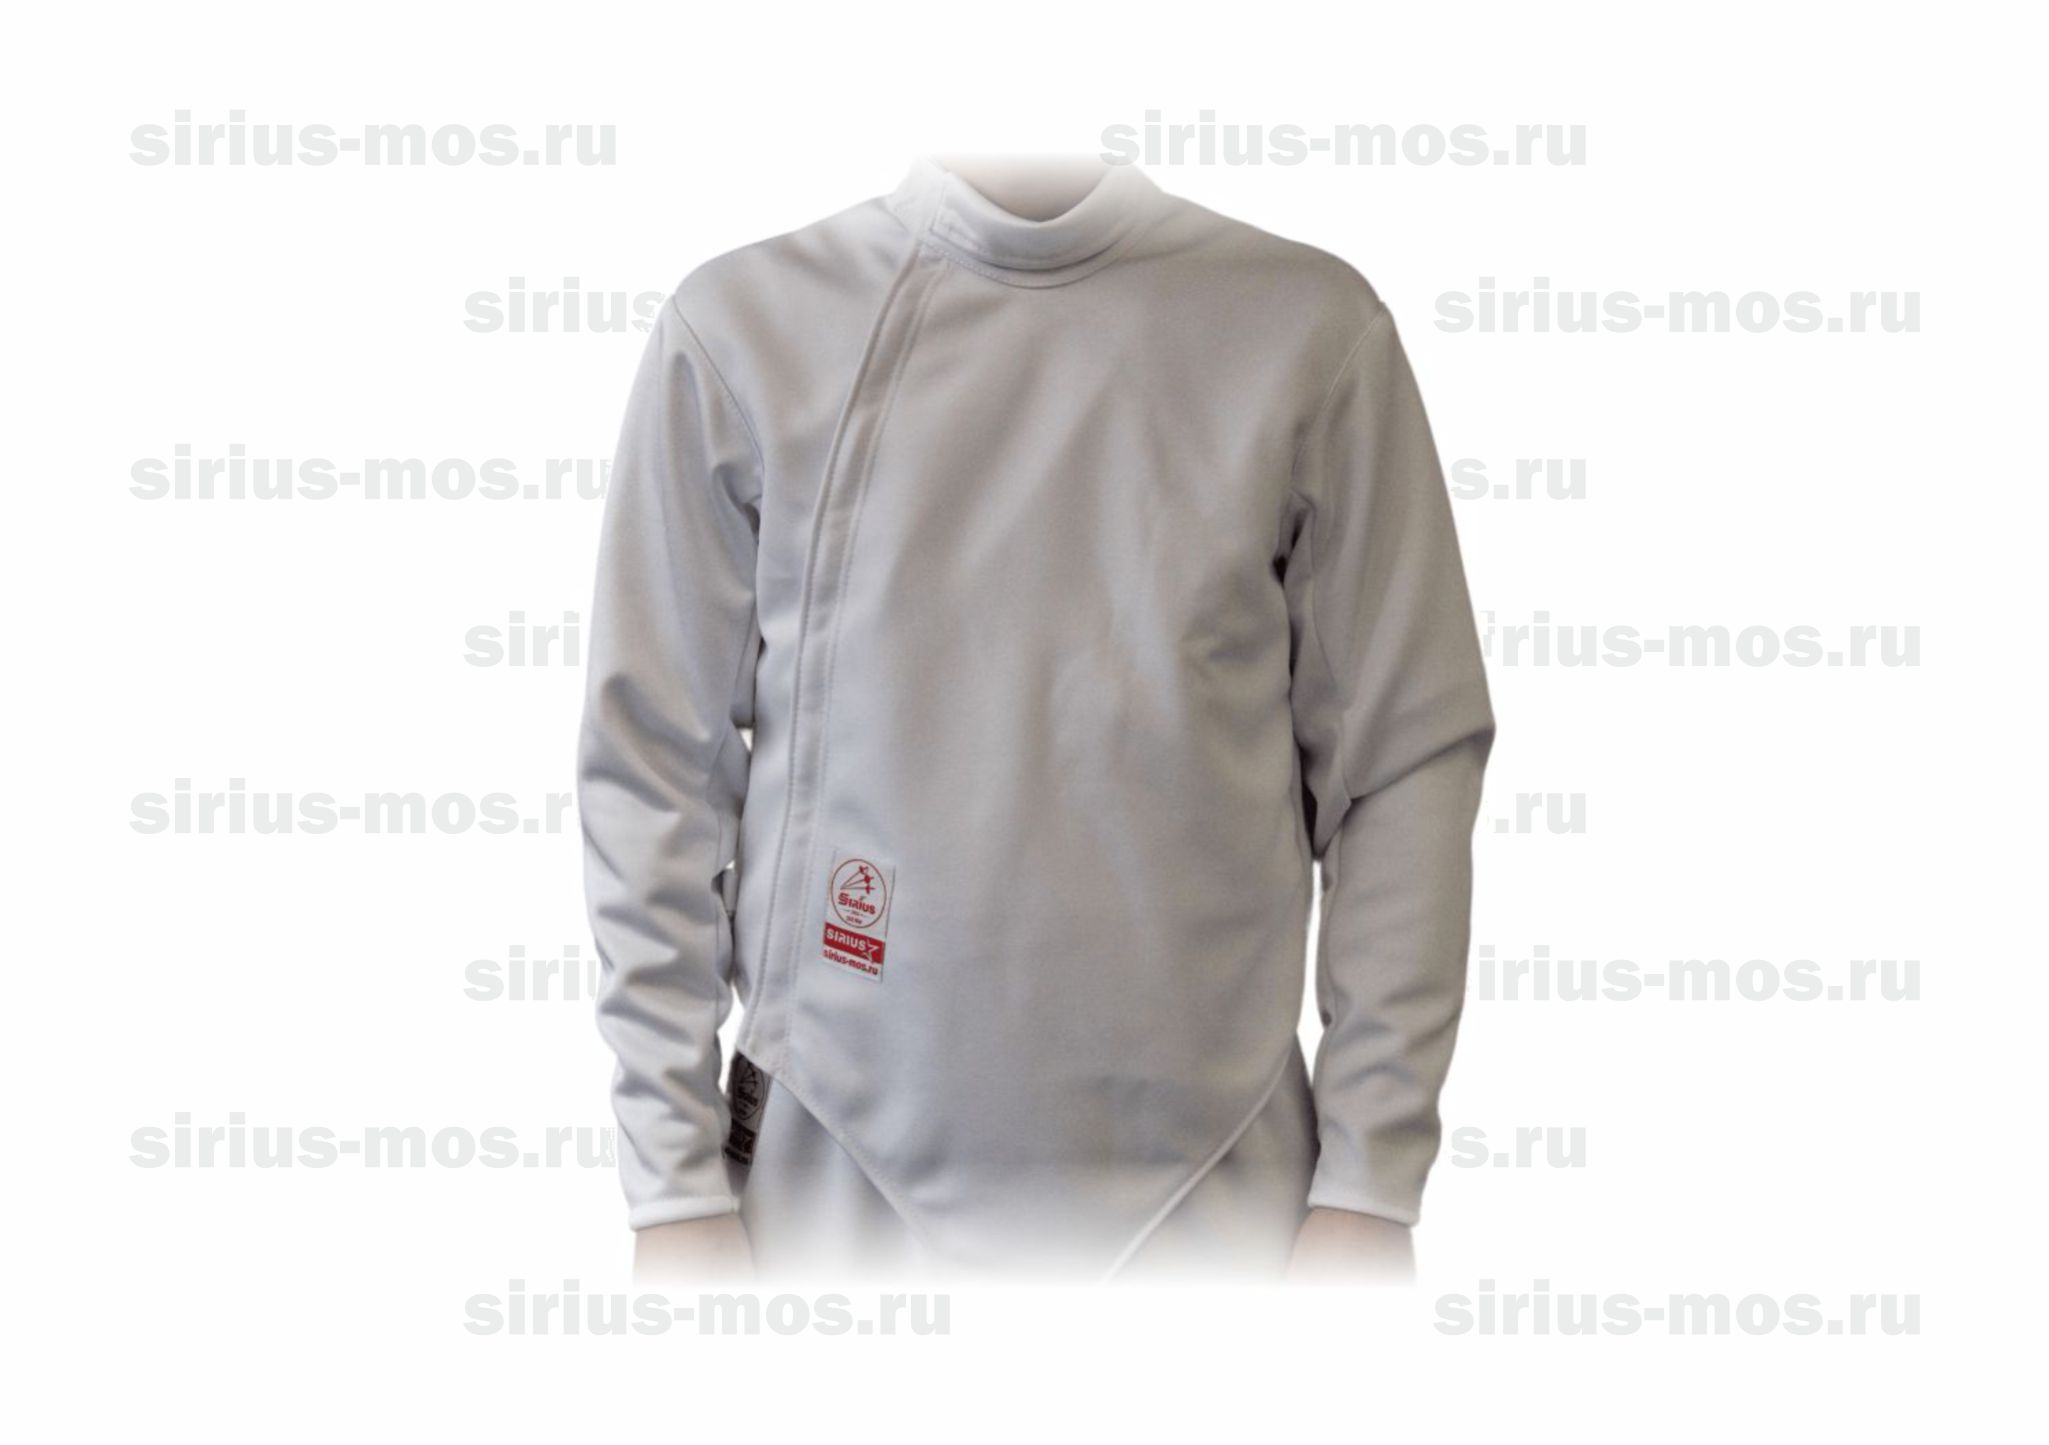 Куртка фехтовальная (шпага)Sirius 350 N